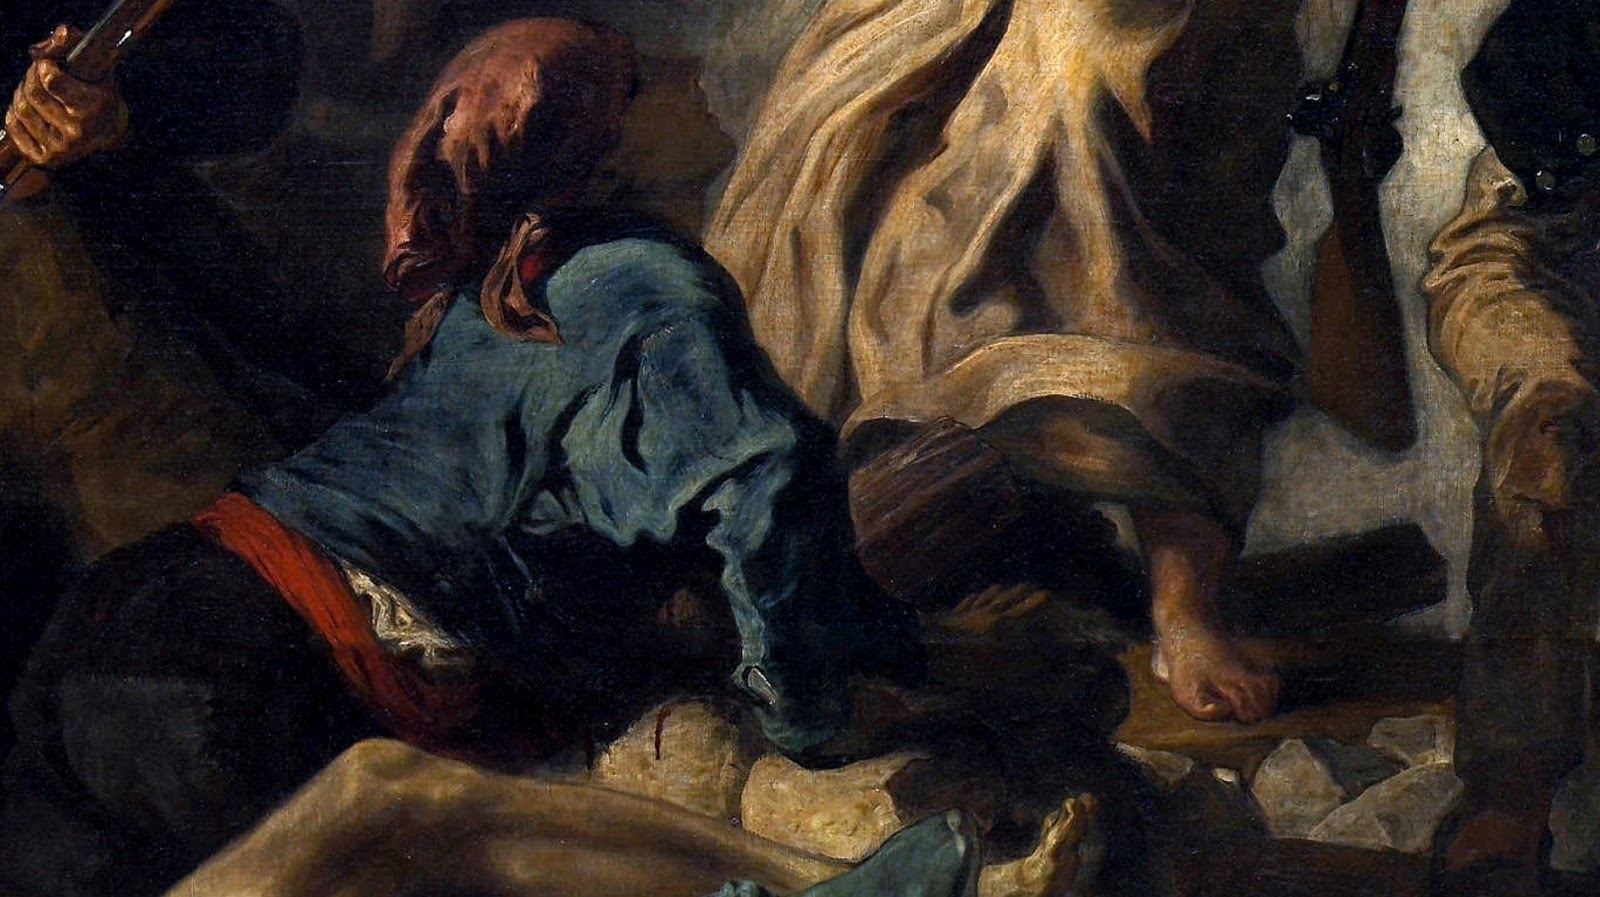 Eugene+Delacroix-1798-1863 (156).jpg